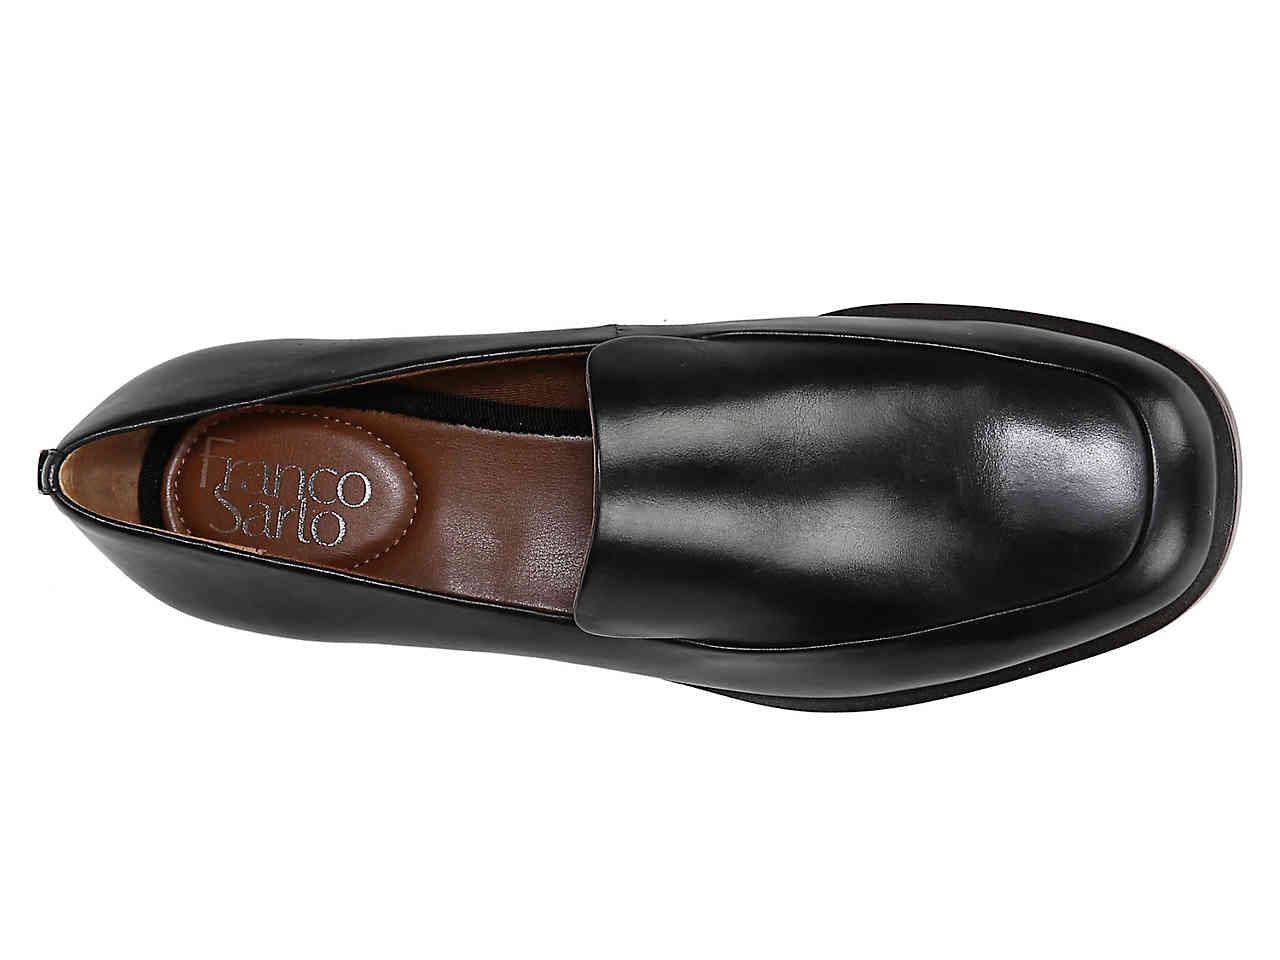 Marsalla Black Leather Franco Sarto Loafers